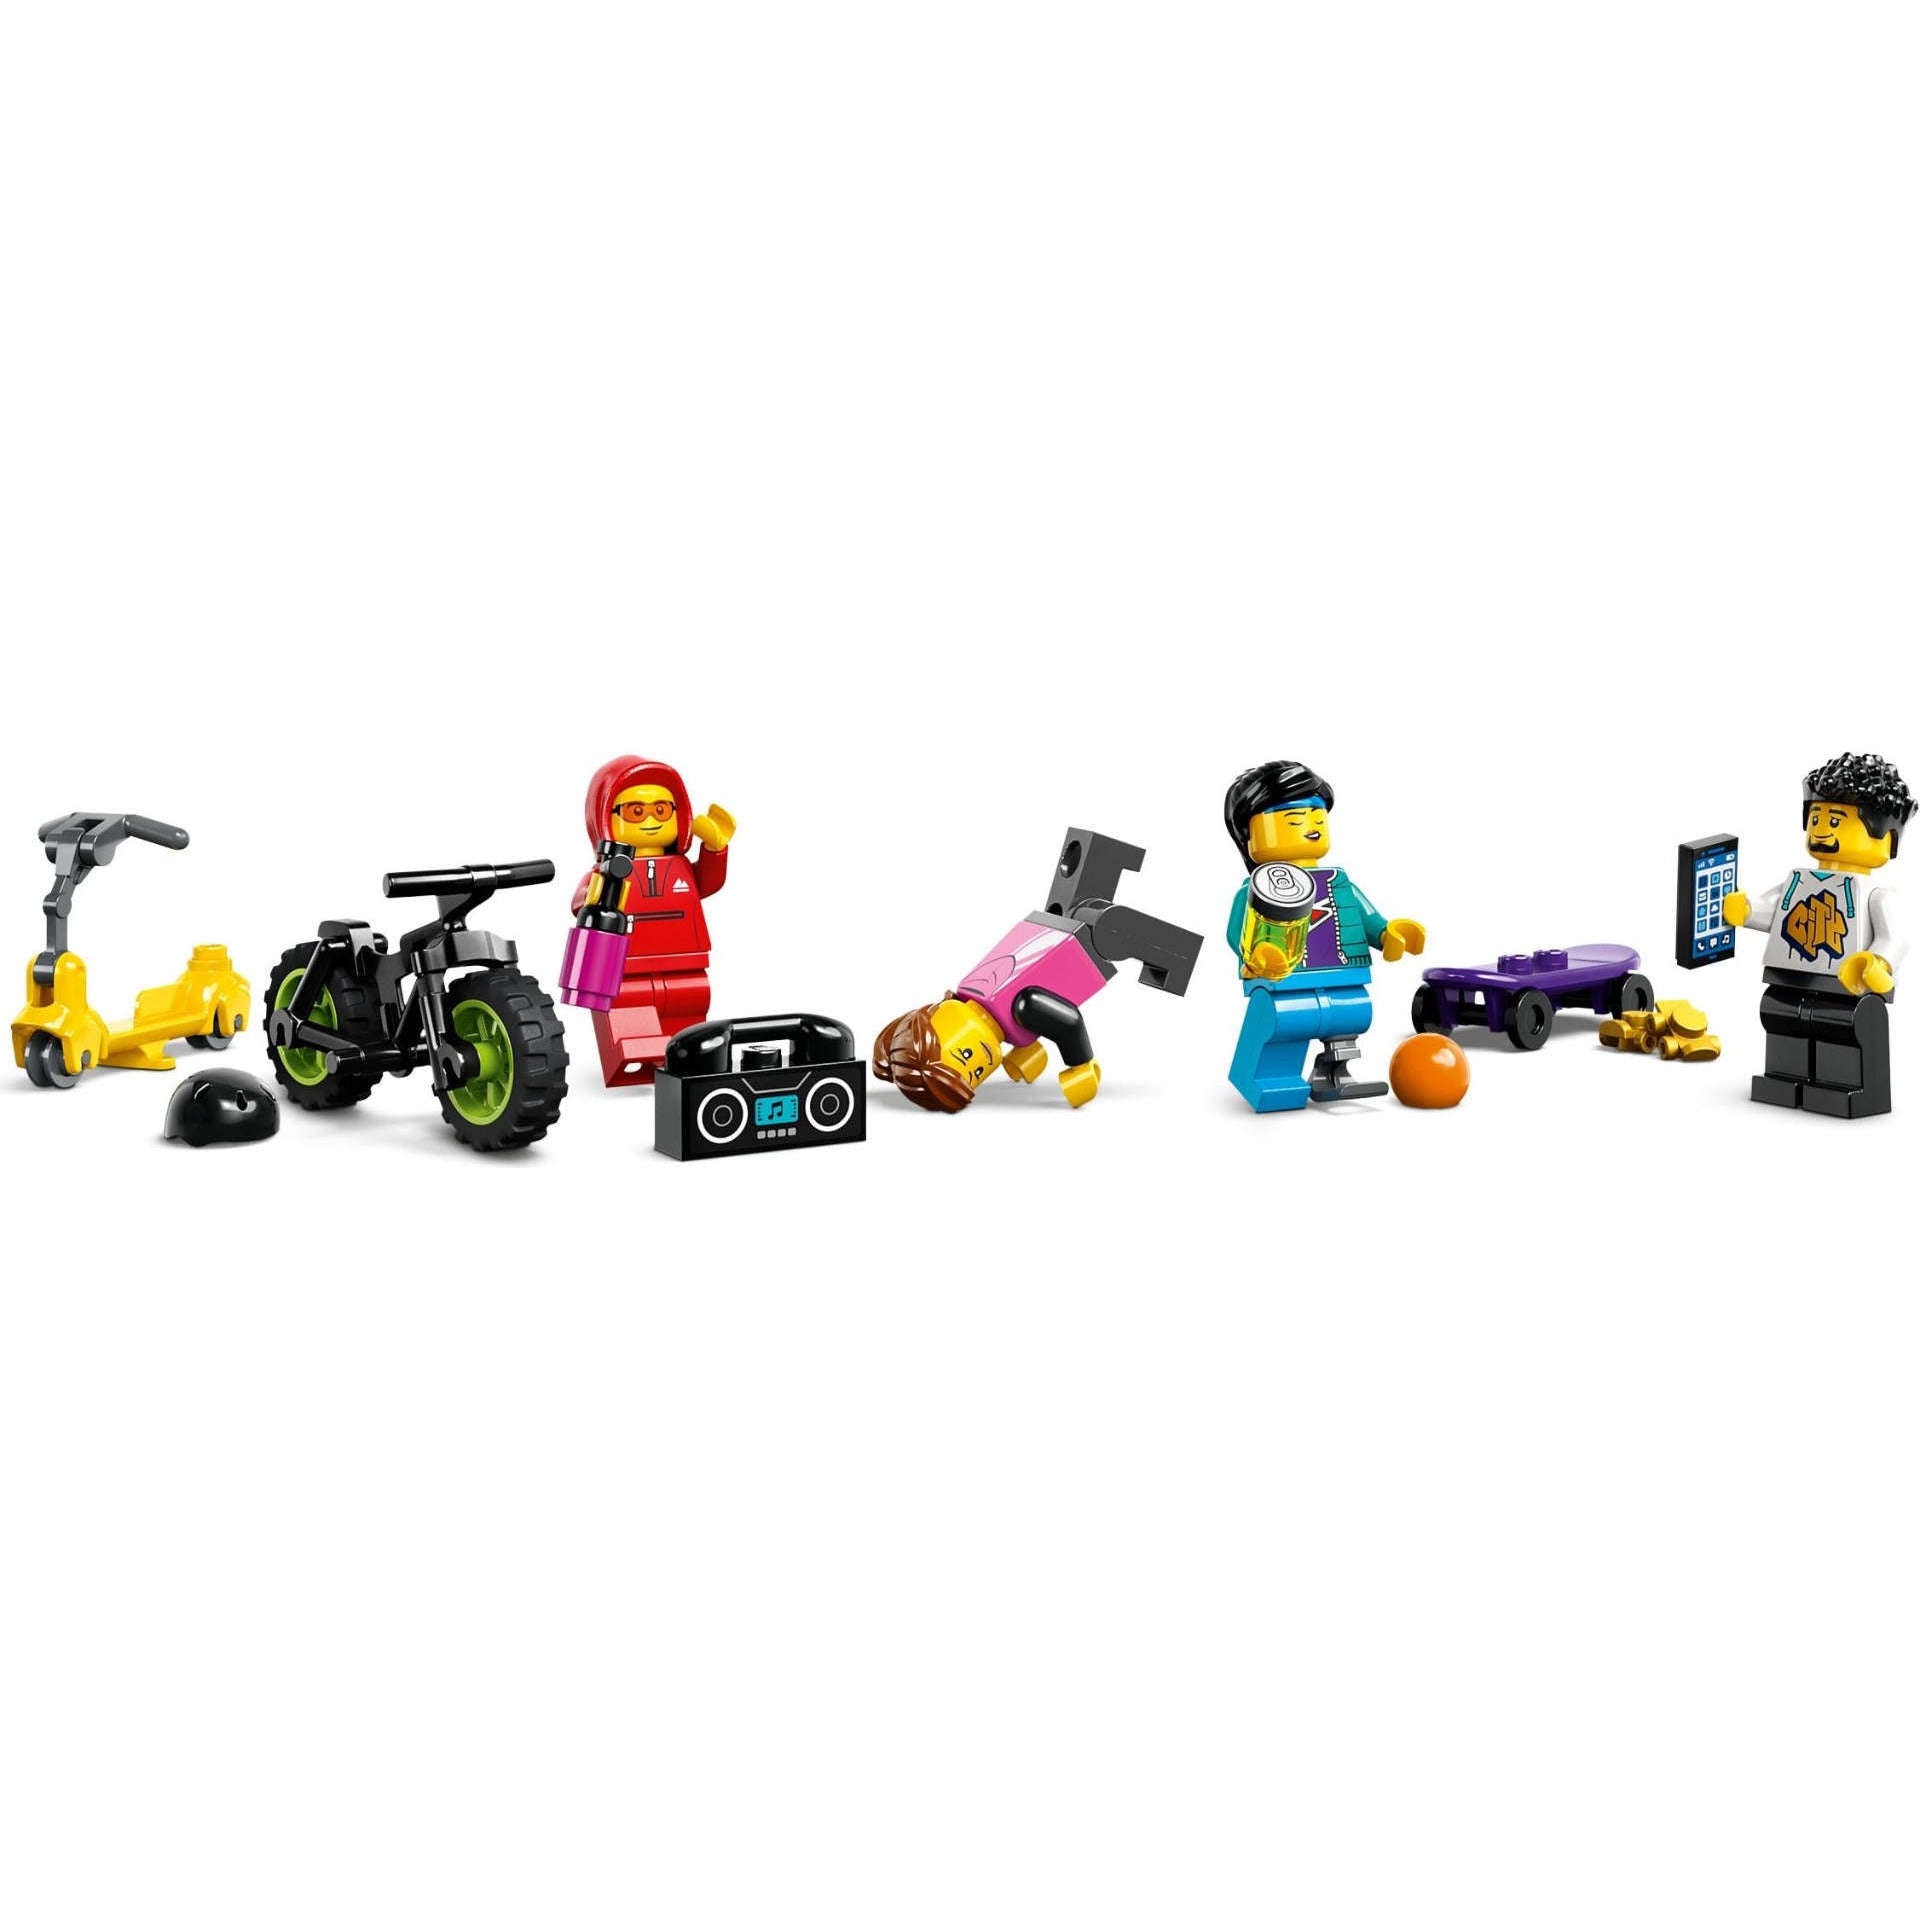 Toys N Tuck:Lego 60364 City Street Skate Park,Lego City